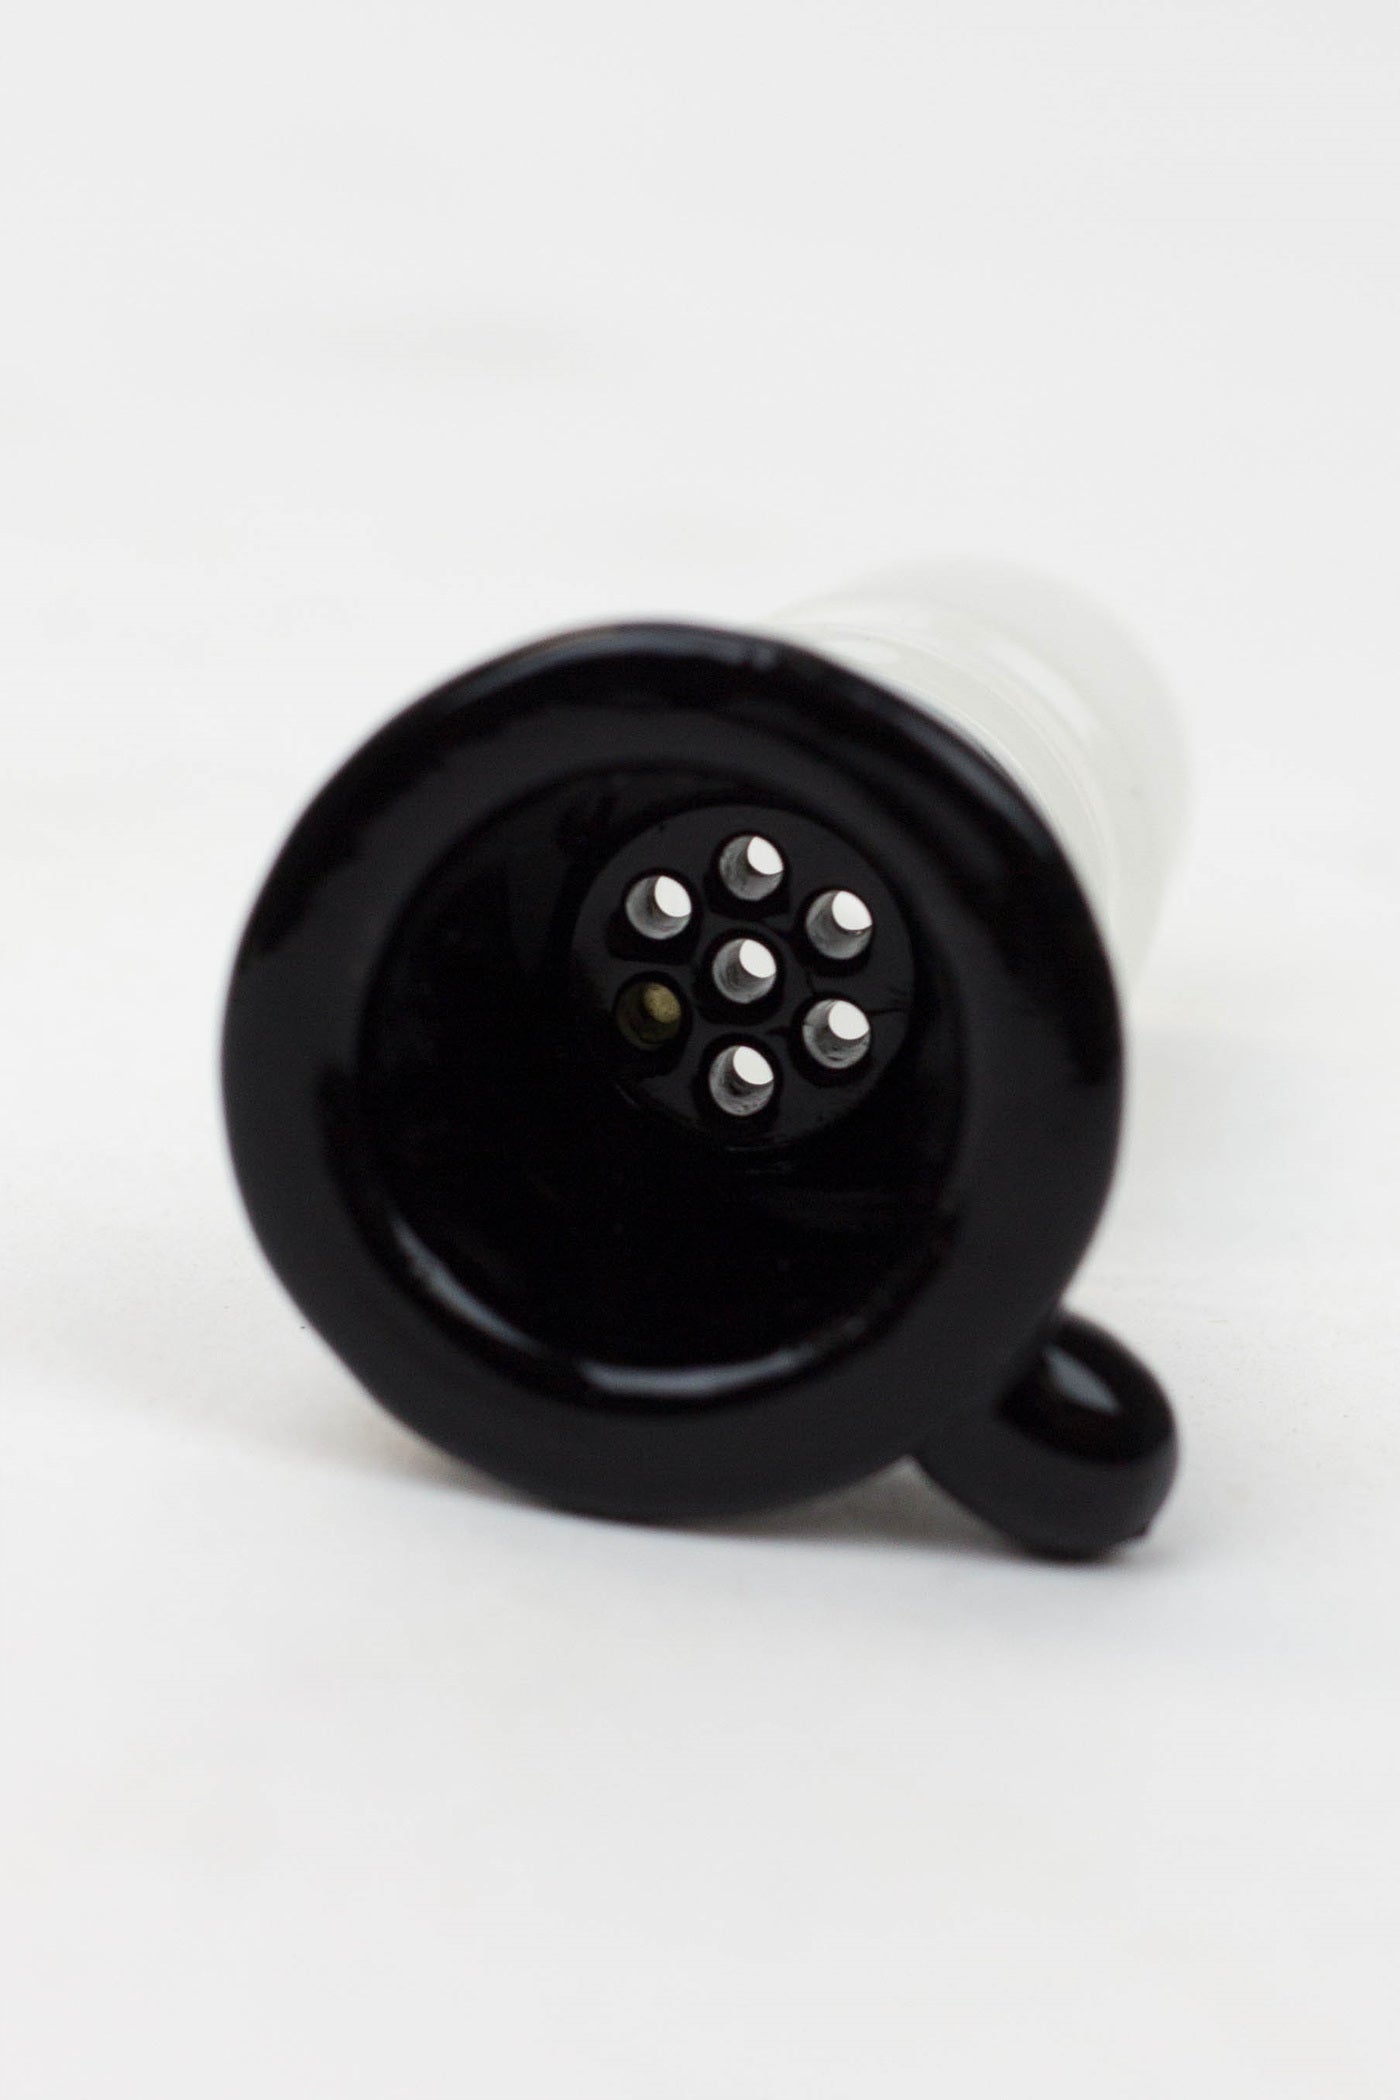 SDF Bowl Black Premium 19mm Male_1